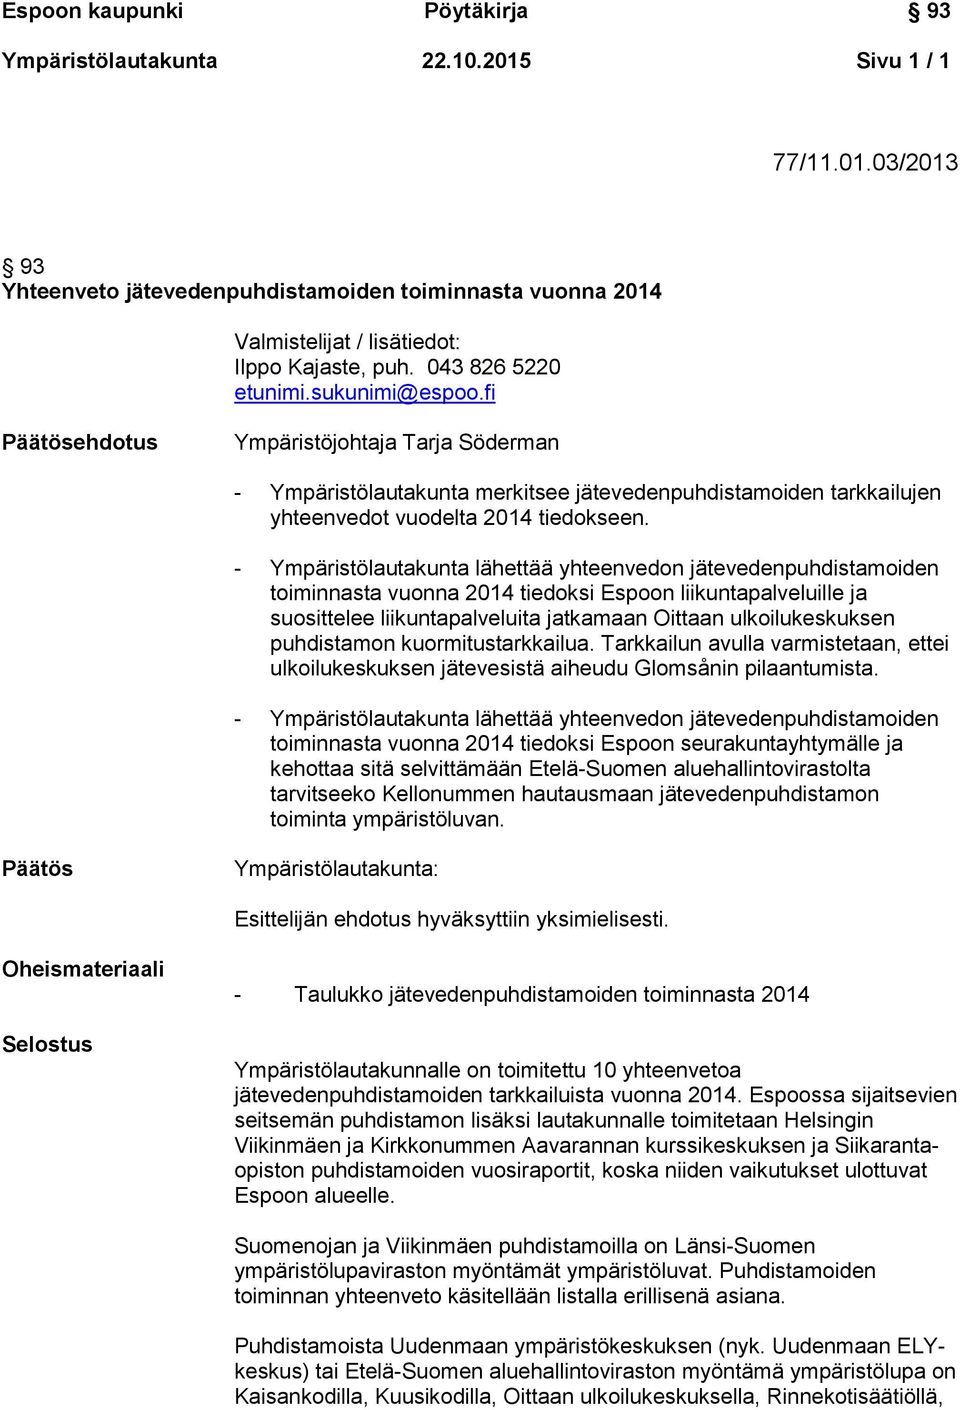 - Ympäristölautakunta lähettää yhteenvedon jätevedenpuhdistamoiden toiminnasta vuonna 2014 tiedoksi Espoon liikuntapalveluille ja suosittelee liikuntapalveluita jatkamaan Oittaan ulkoilukeskuksen